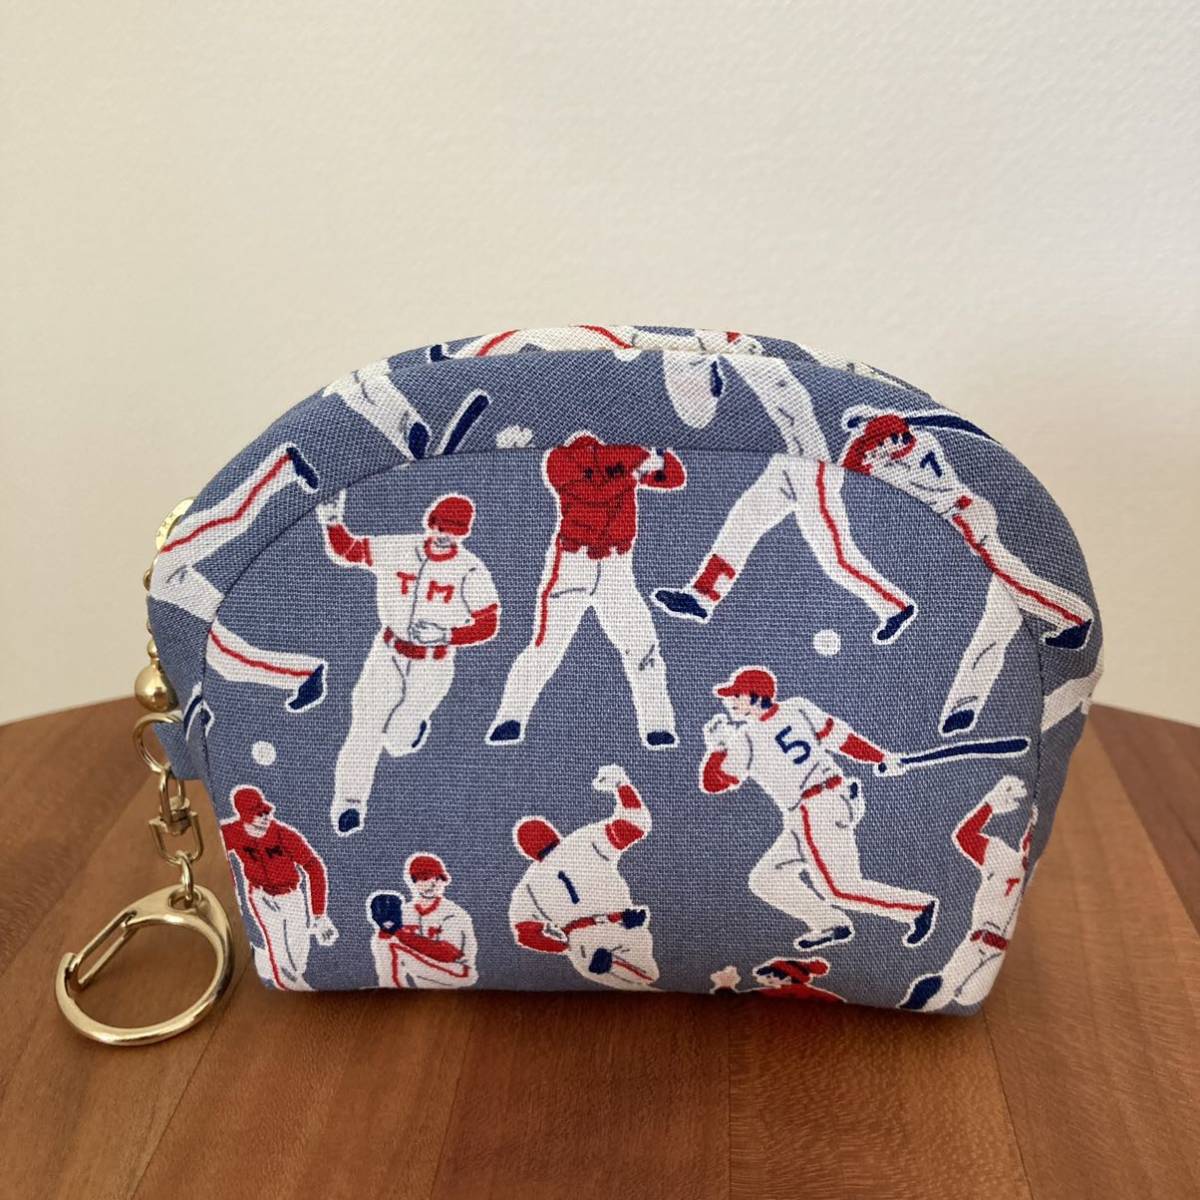  снижение цены *W12 ручная работа Mini сумка baseball Baseball бейсбол игрок кошелек для мелочи . ячейка для монет бардачок застежка-молния сумка carp 